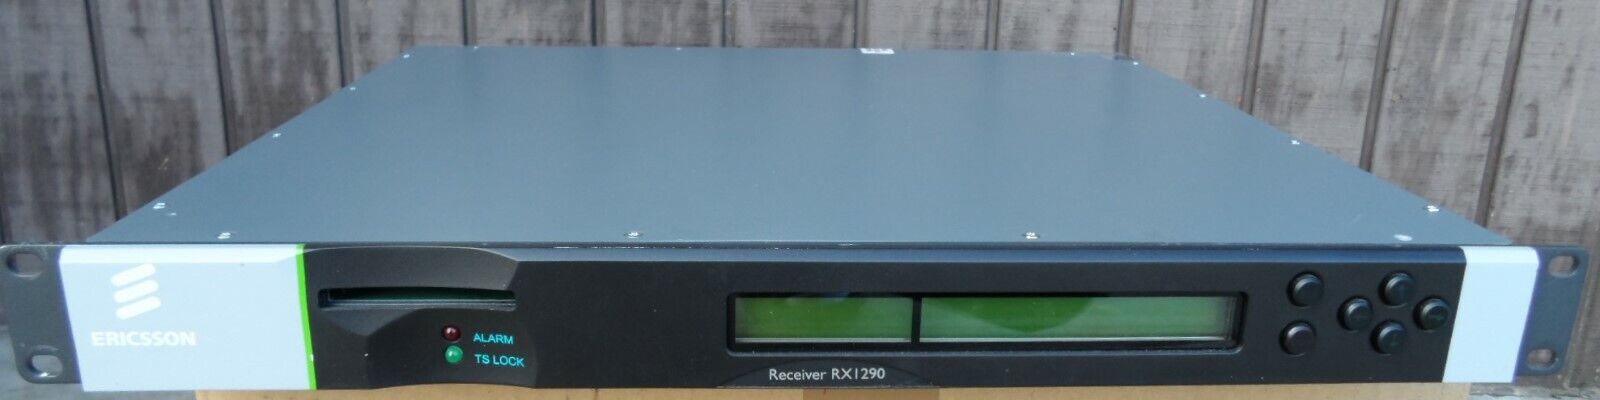 Ericsson New Face Rx1290 Dvb-s/s2/asi Ird Rf Sat Receiver Decoder Tandberg